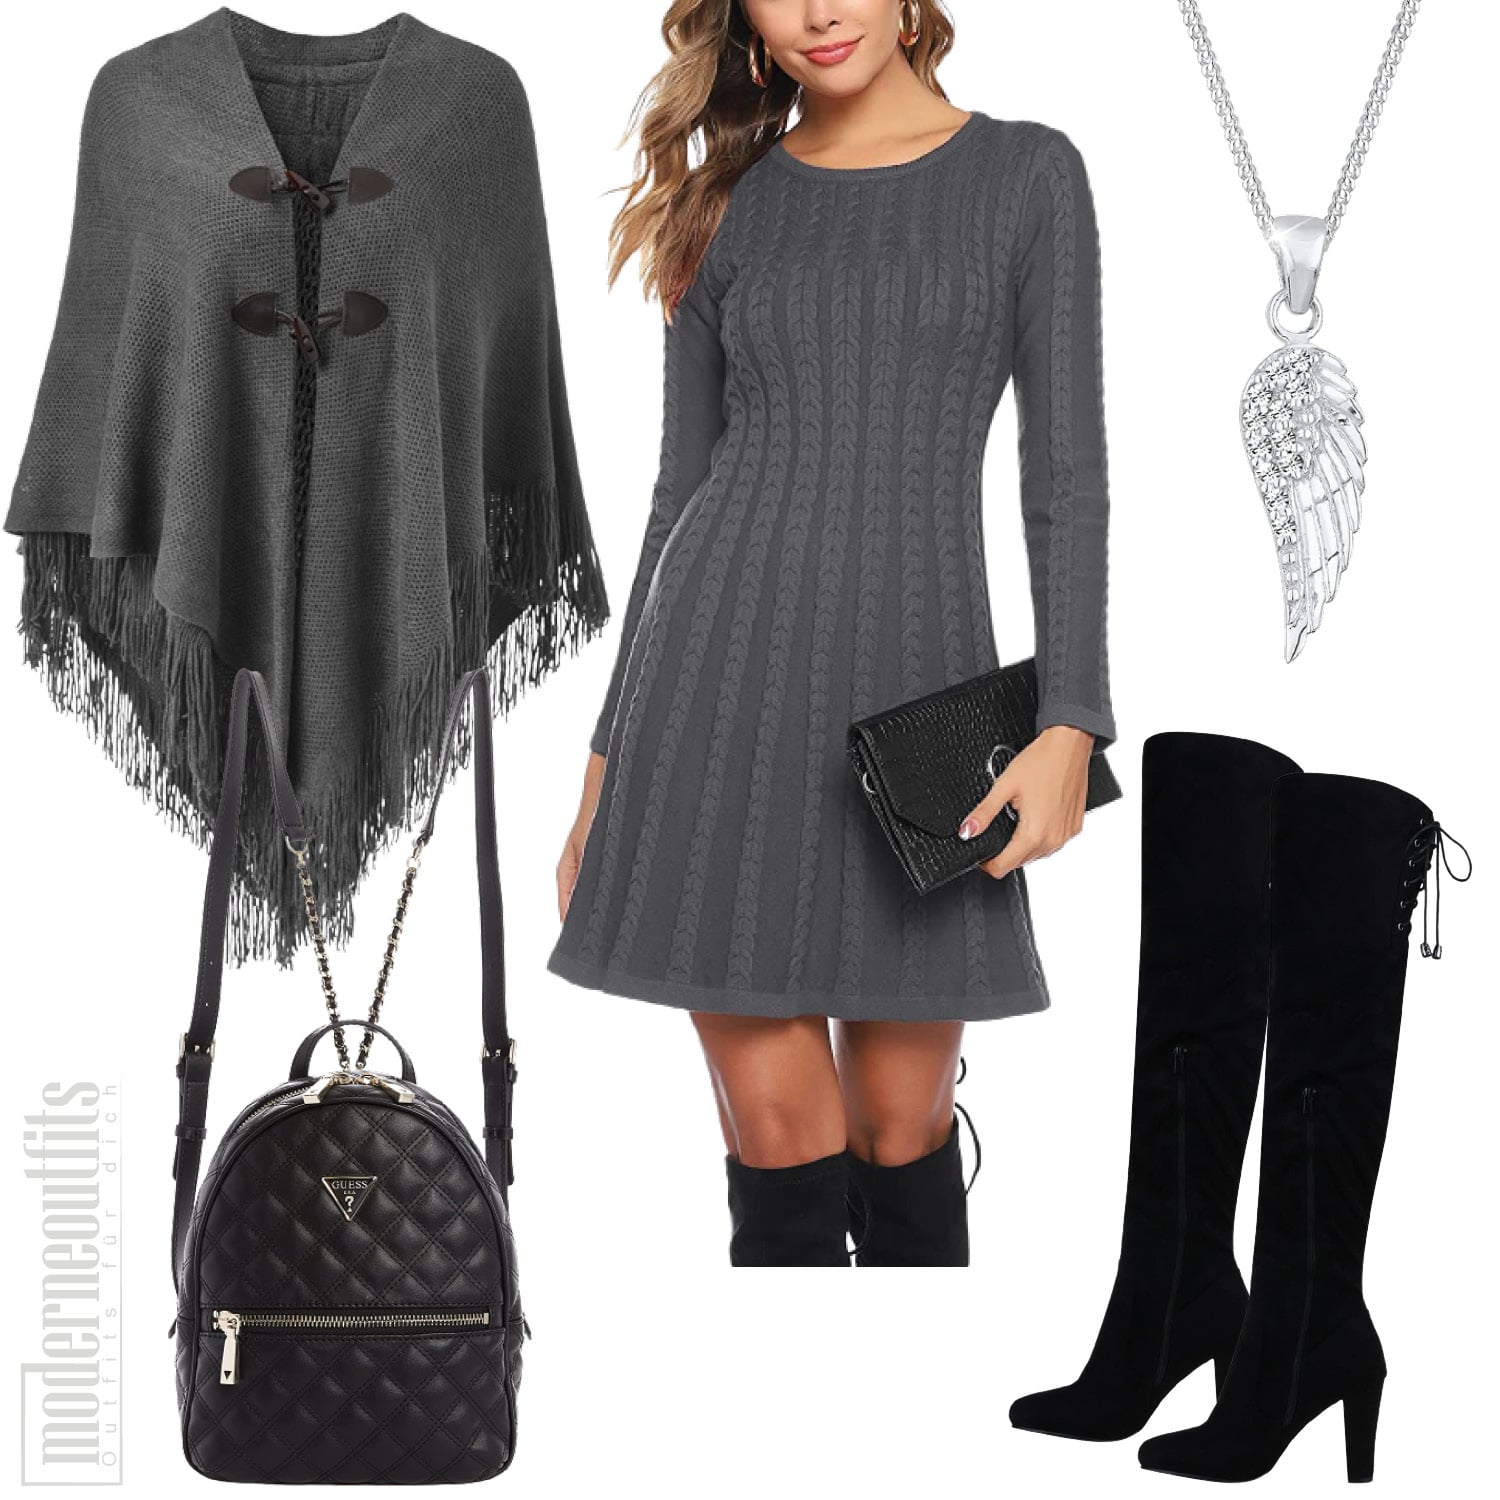 Herbst Outfit für Damen in Grau mit Kleid und Poncho